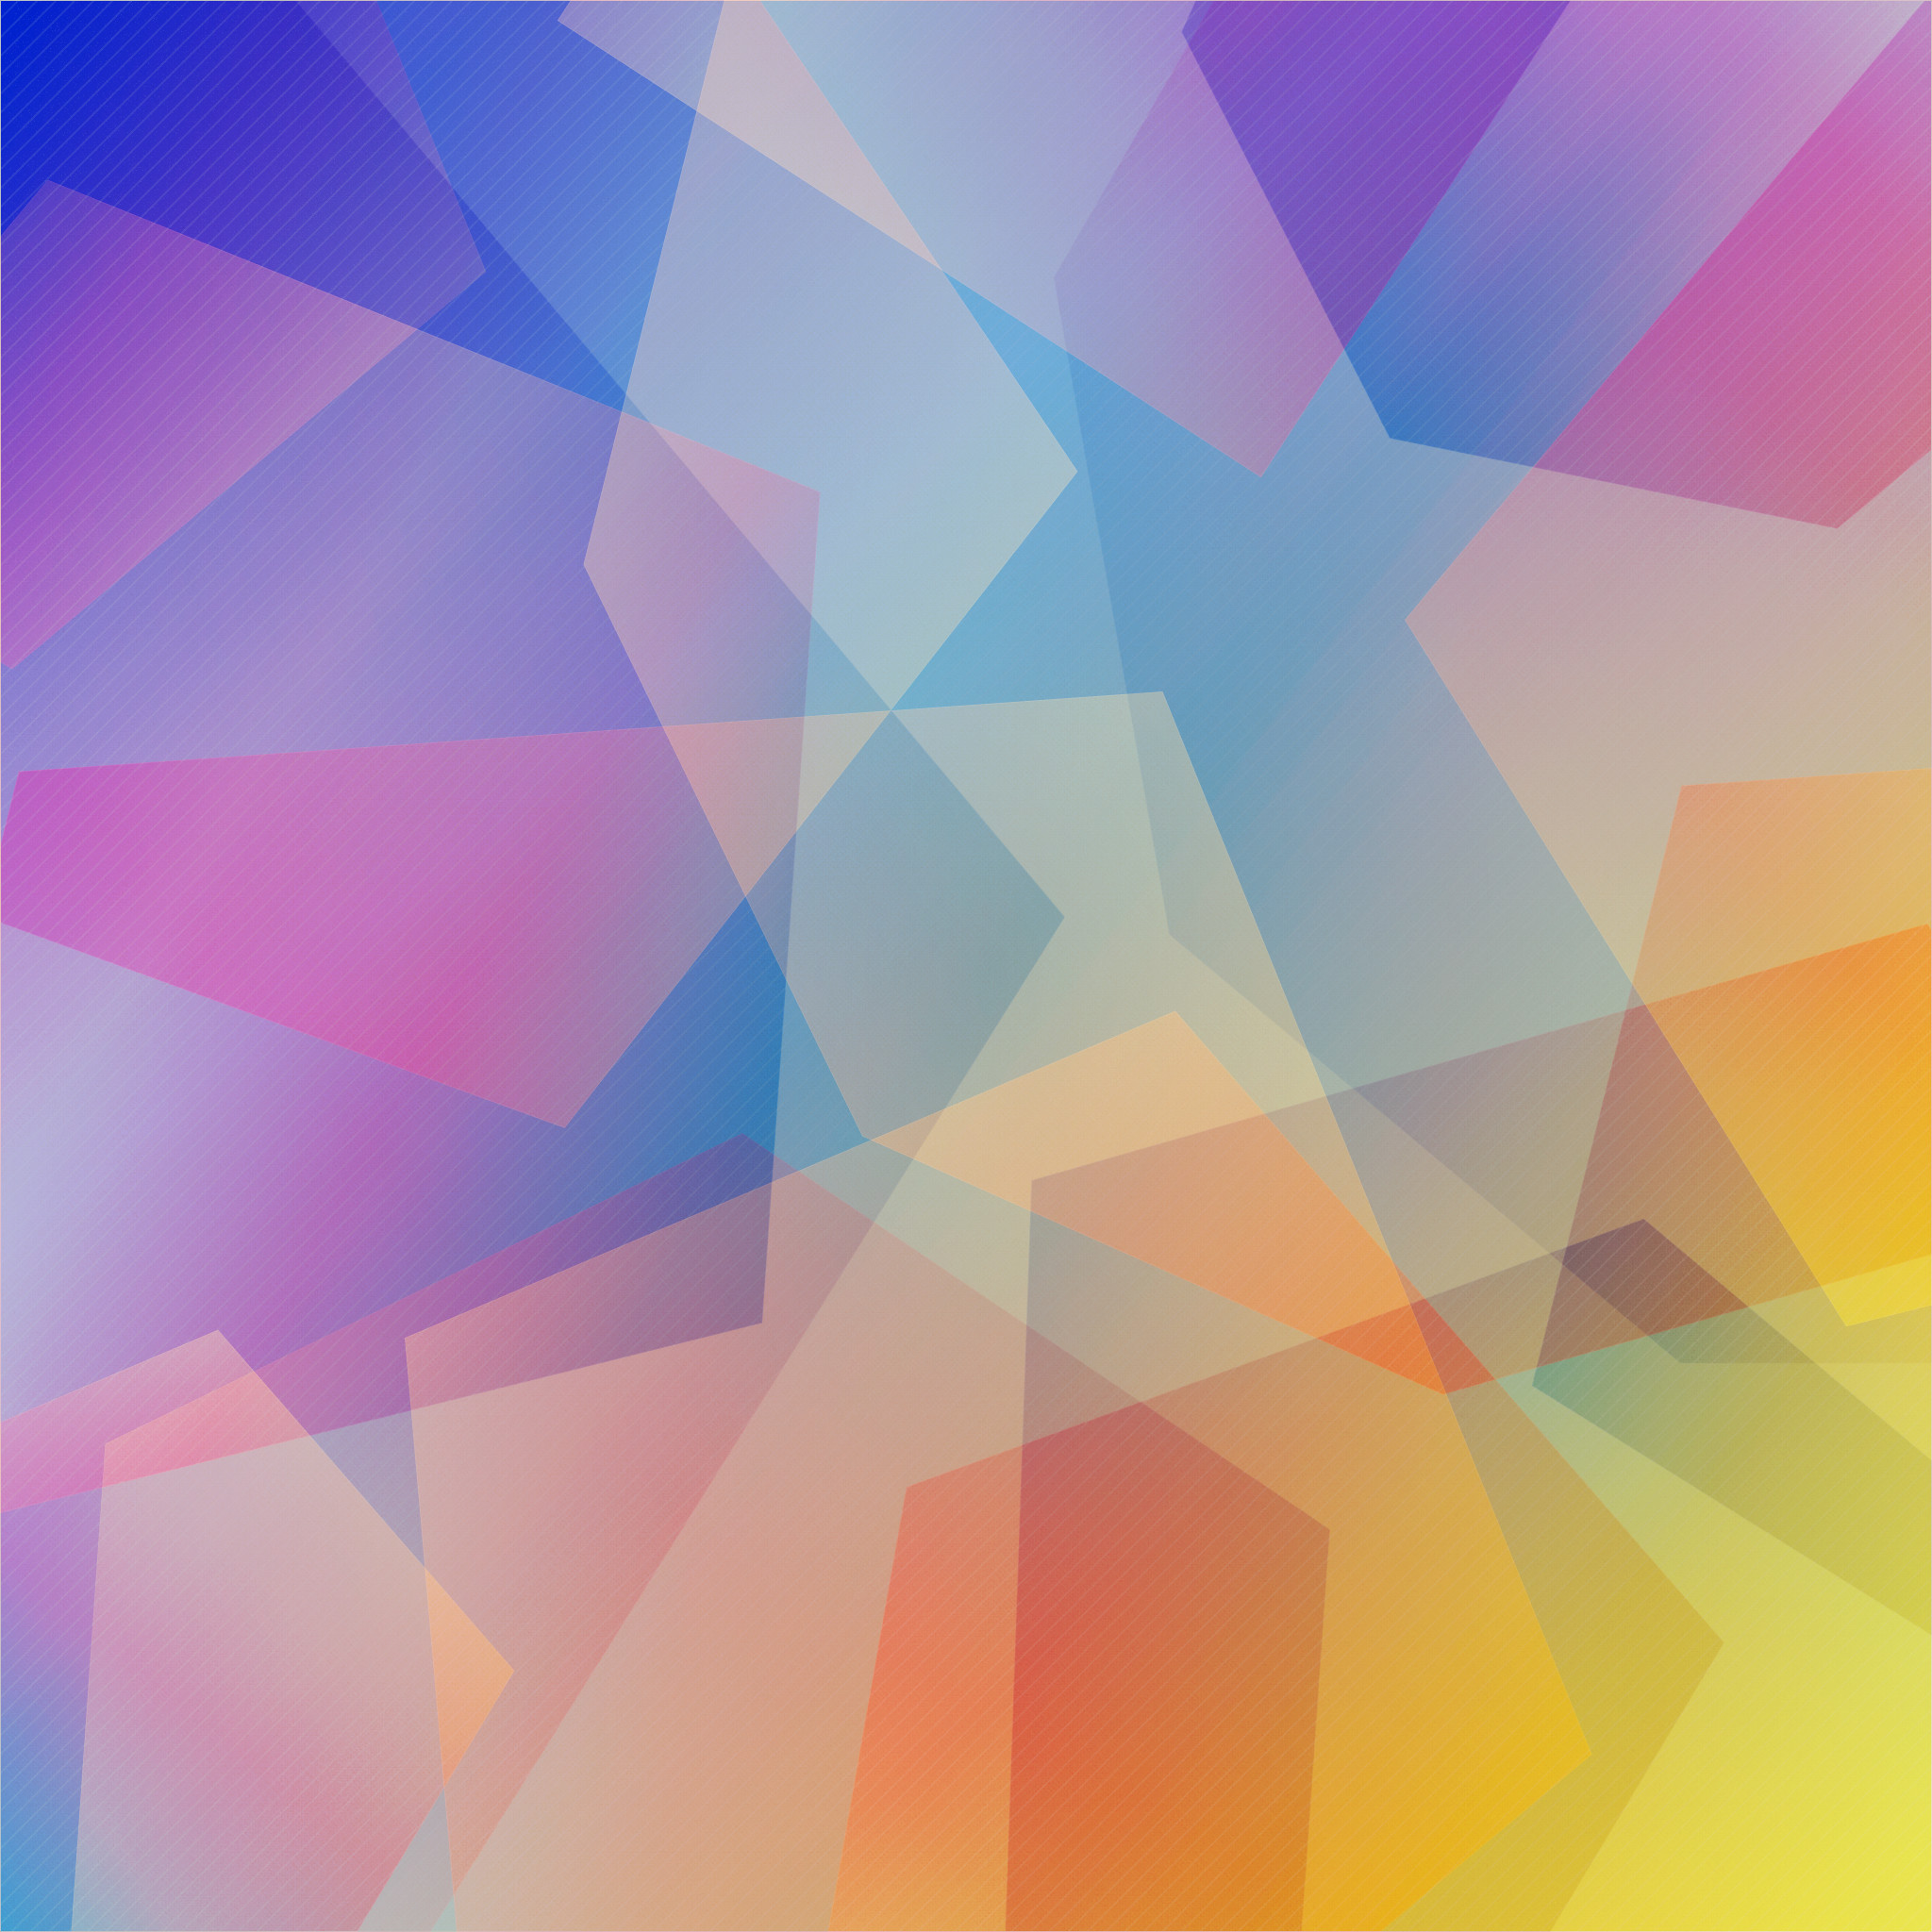 2048x2048 #iOS7 #color #iPad #wallpaper http://ipadretinawallpaper.com